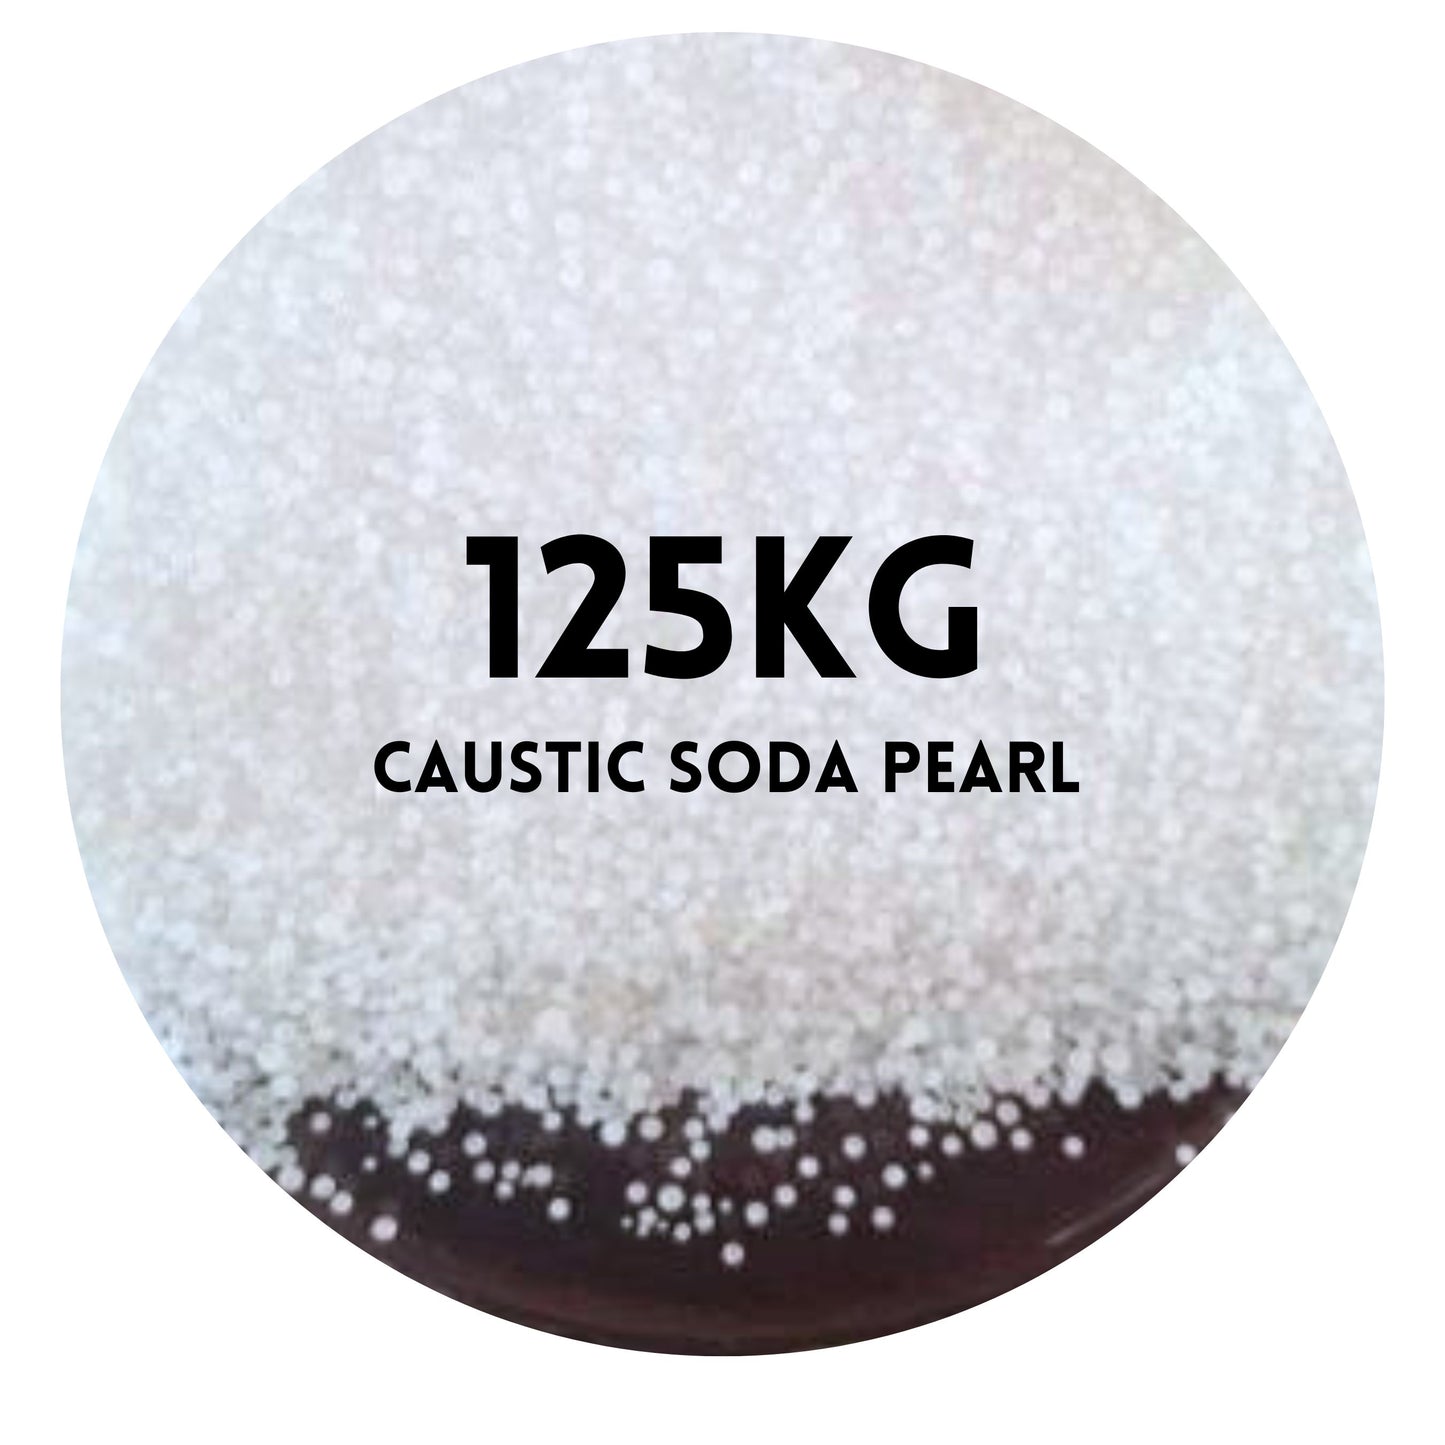 Caustic Soda Pearl - 125kg